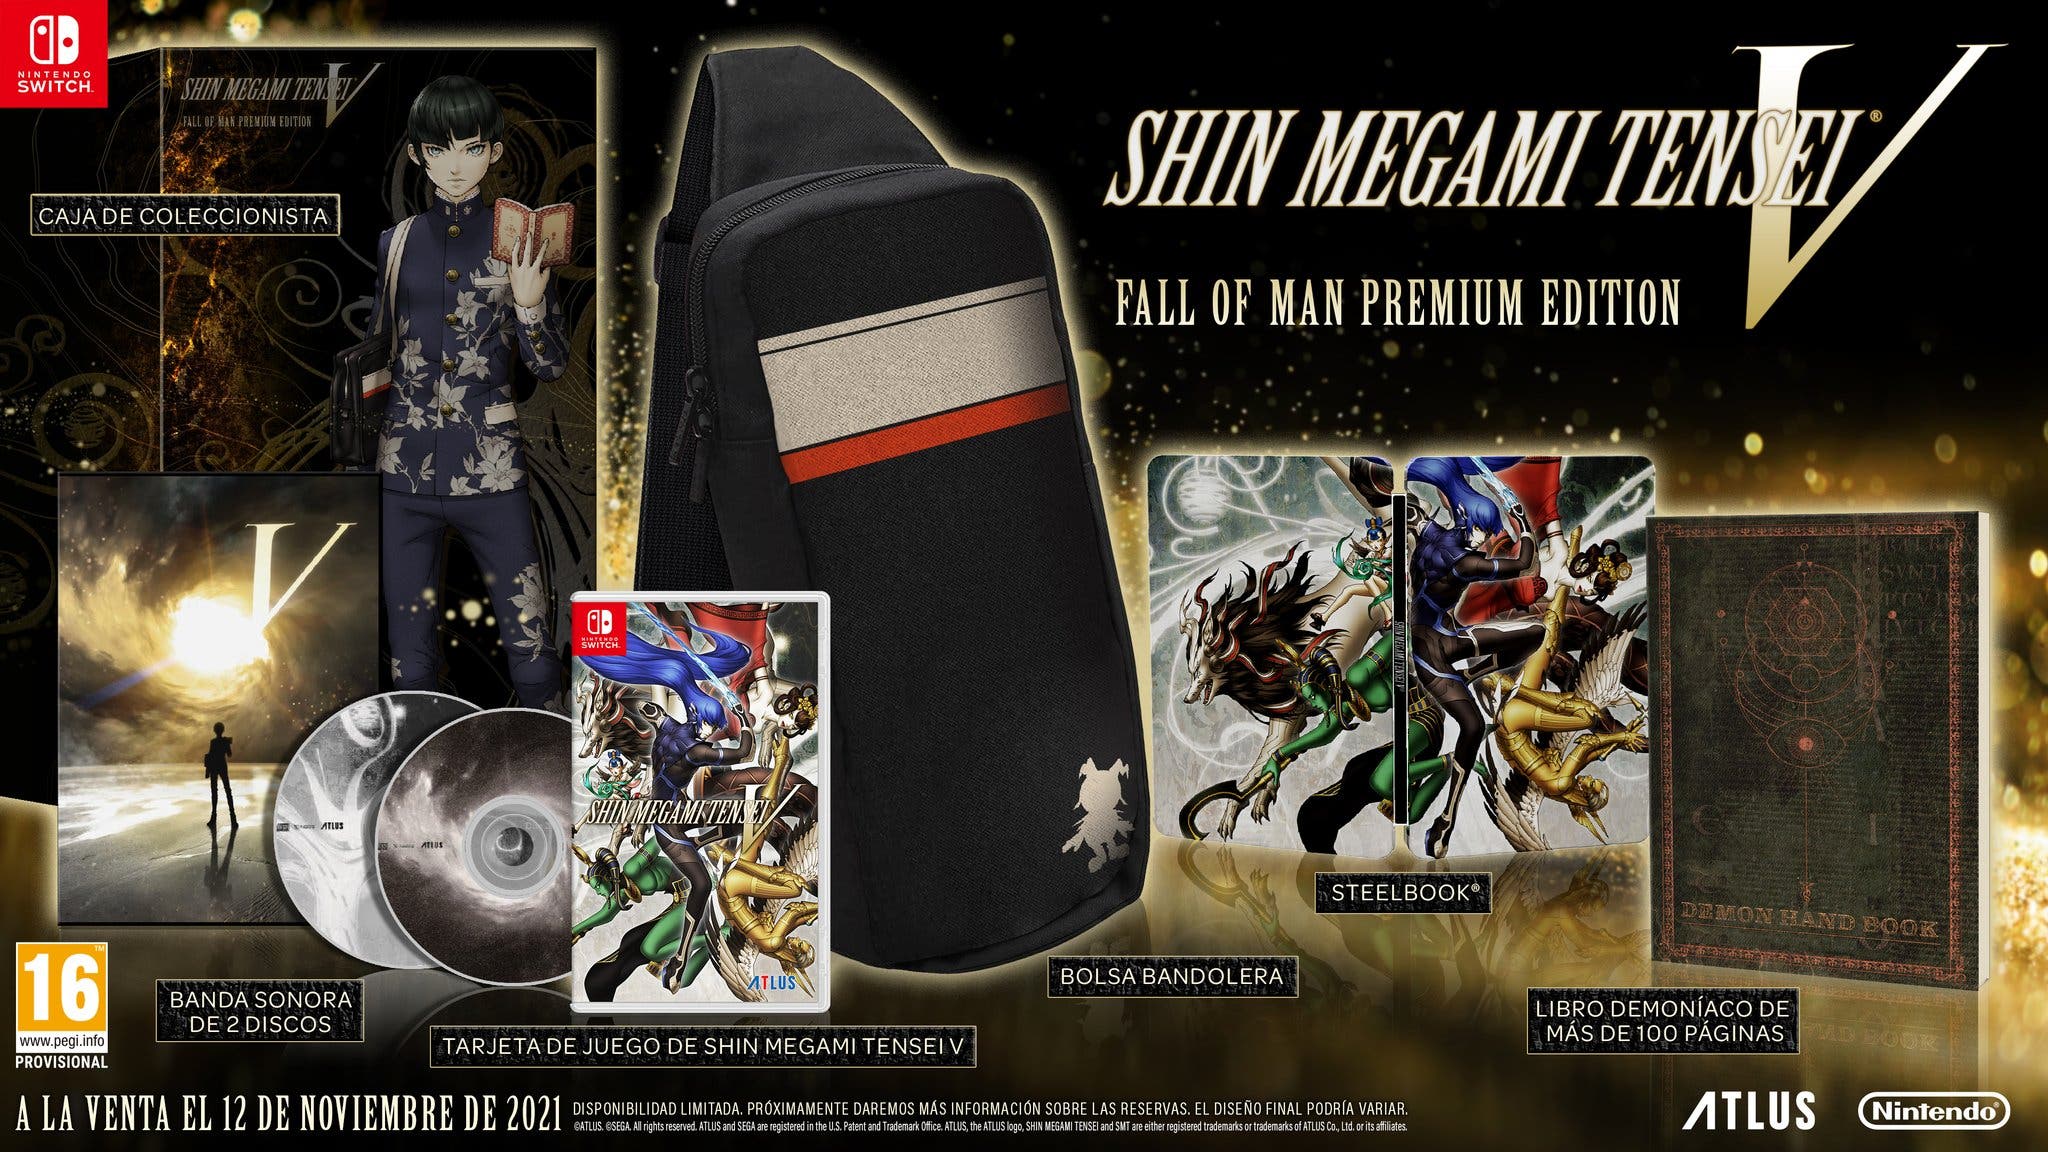 Especuladores ya están revendiendo la edición premium de Shin Megami Tensei V a estos precios